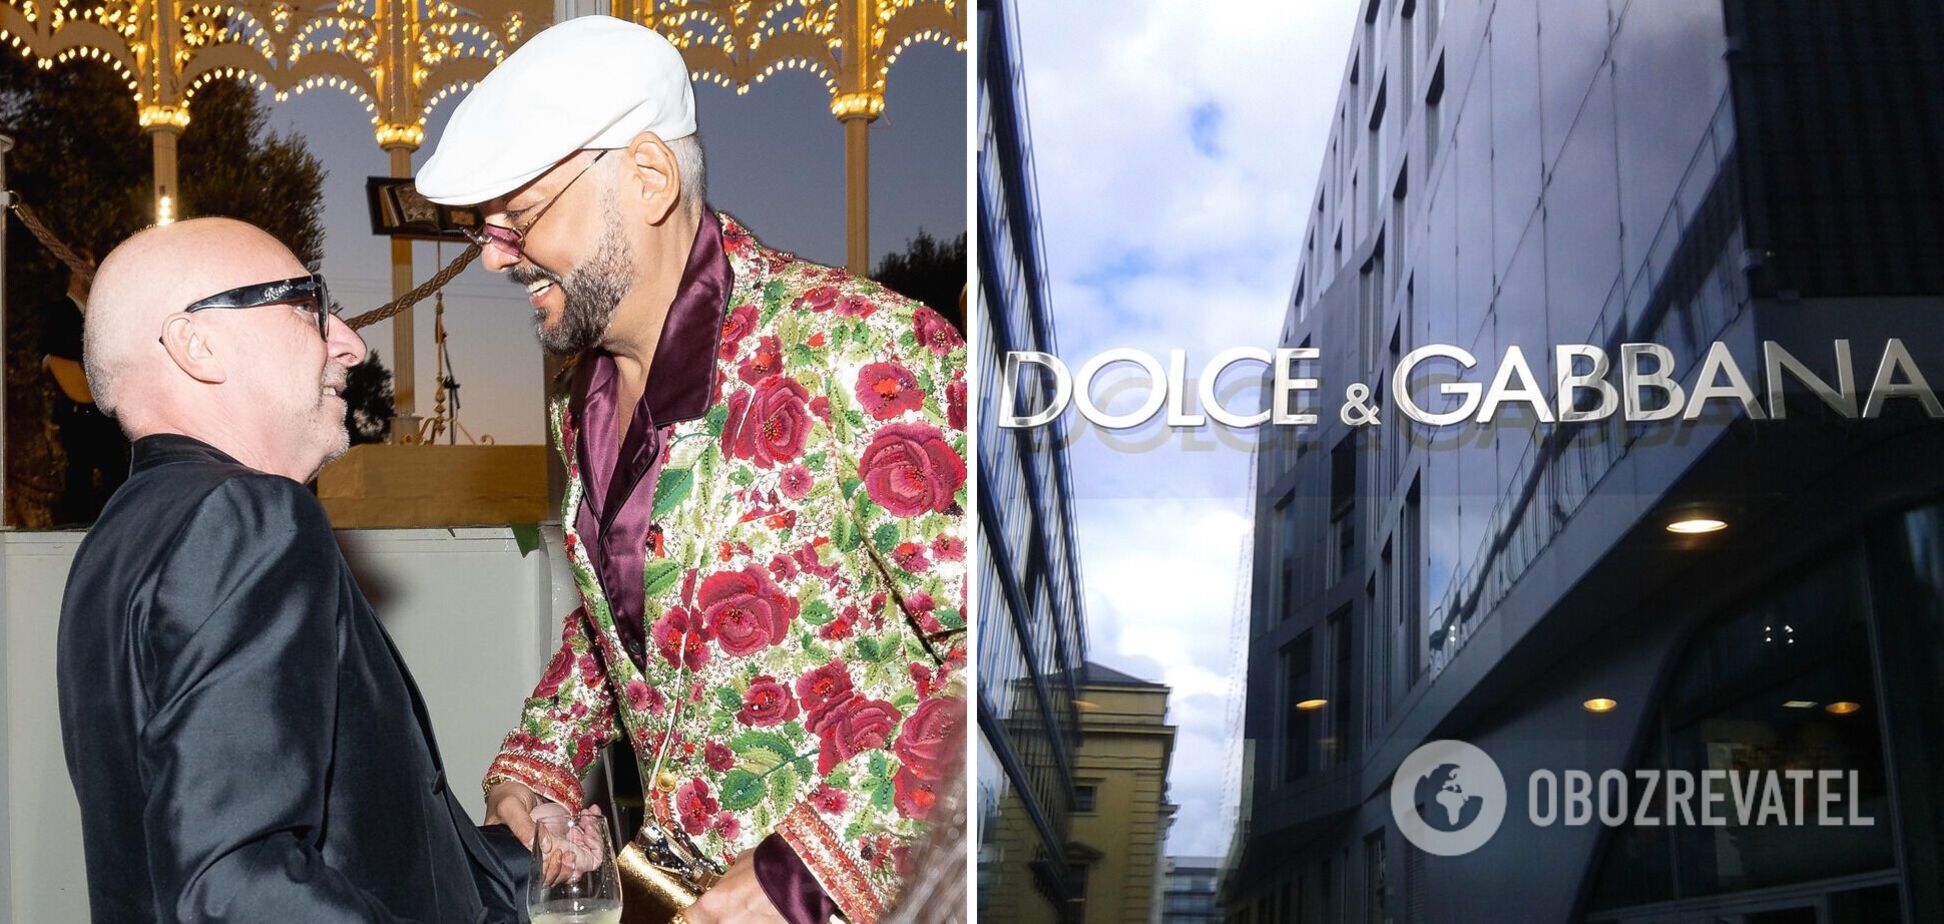 Dolce & Gabbana потрапили в проросійський скандал: Кіркоров показав, як бренд та його гості поважають путіністів